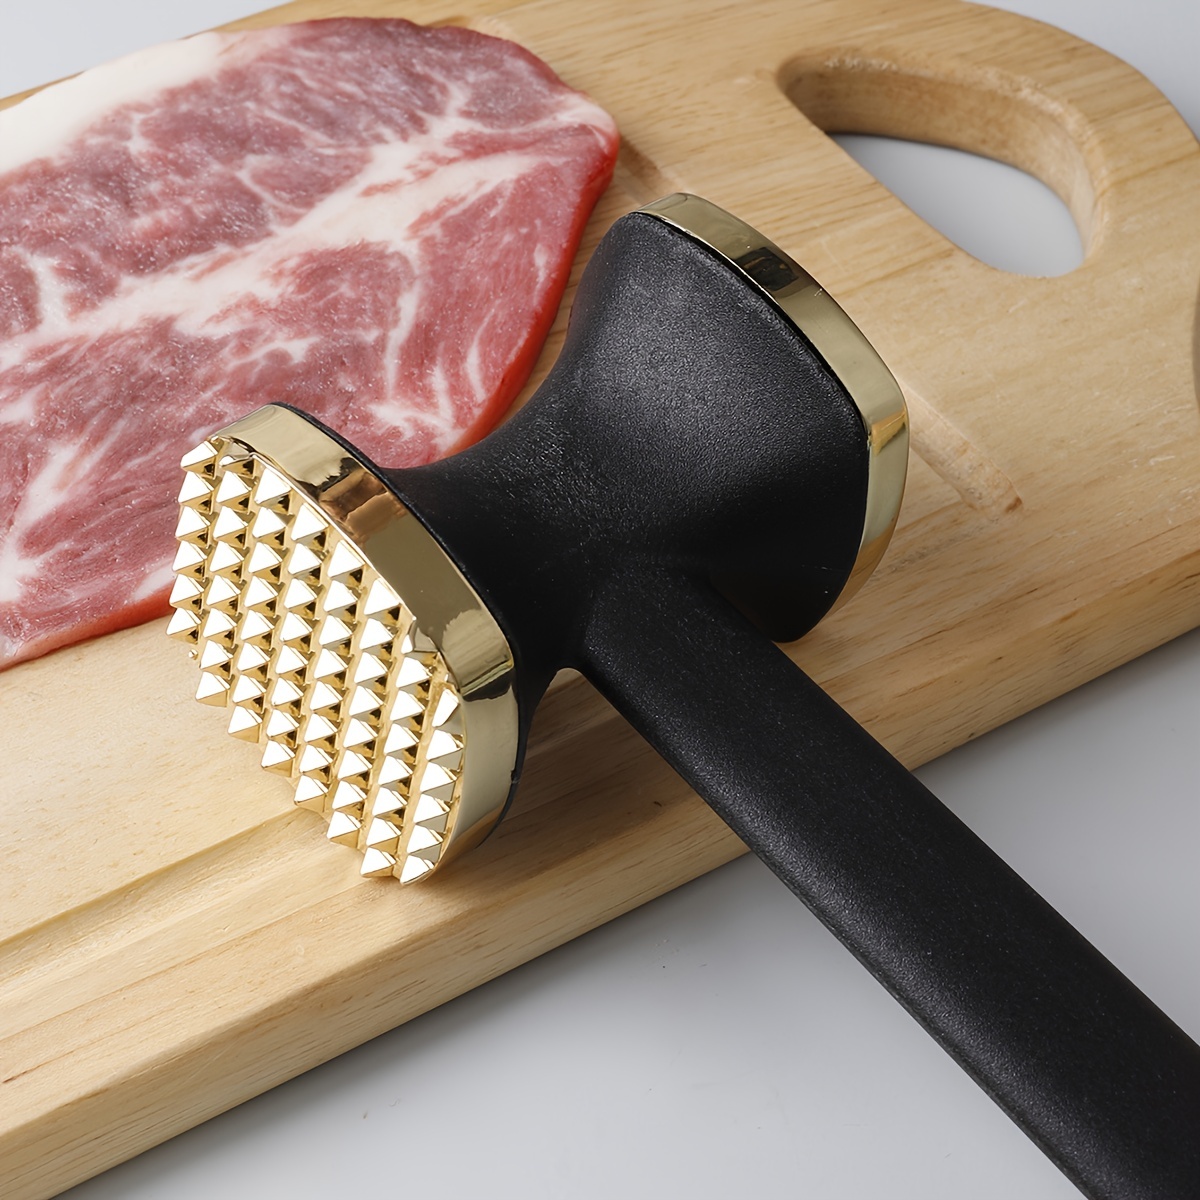 Herramienta de mazo de carne de cara, herramienta de martillo ablandador de  carne para cocina, carne tierna de cerdo, carne tierna martillo de carne